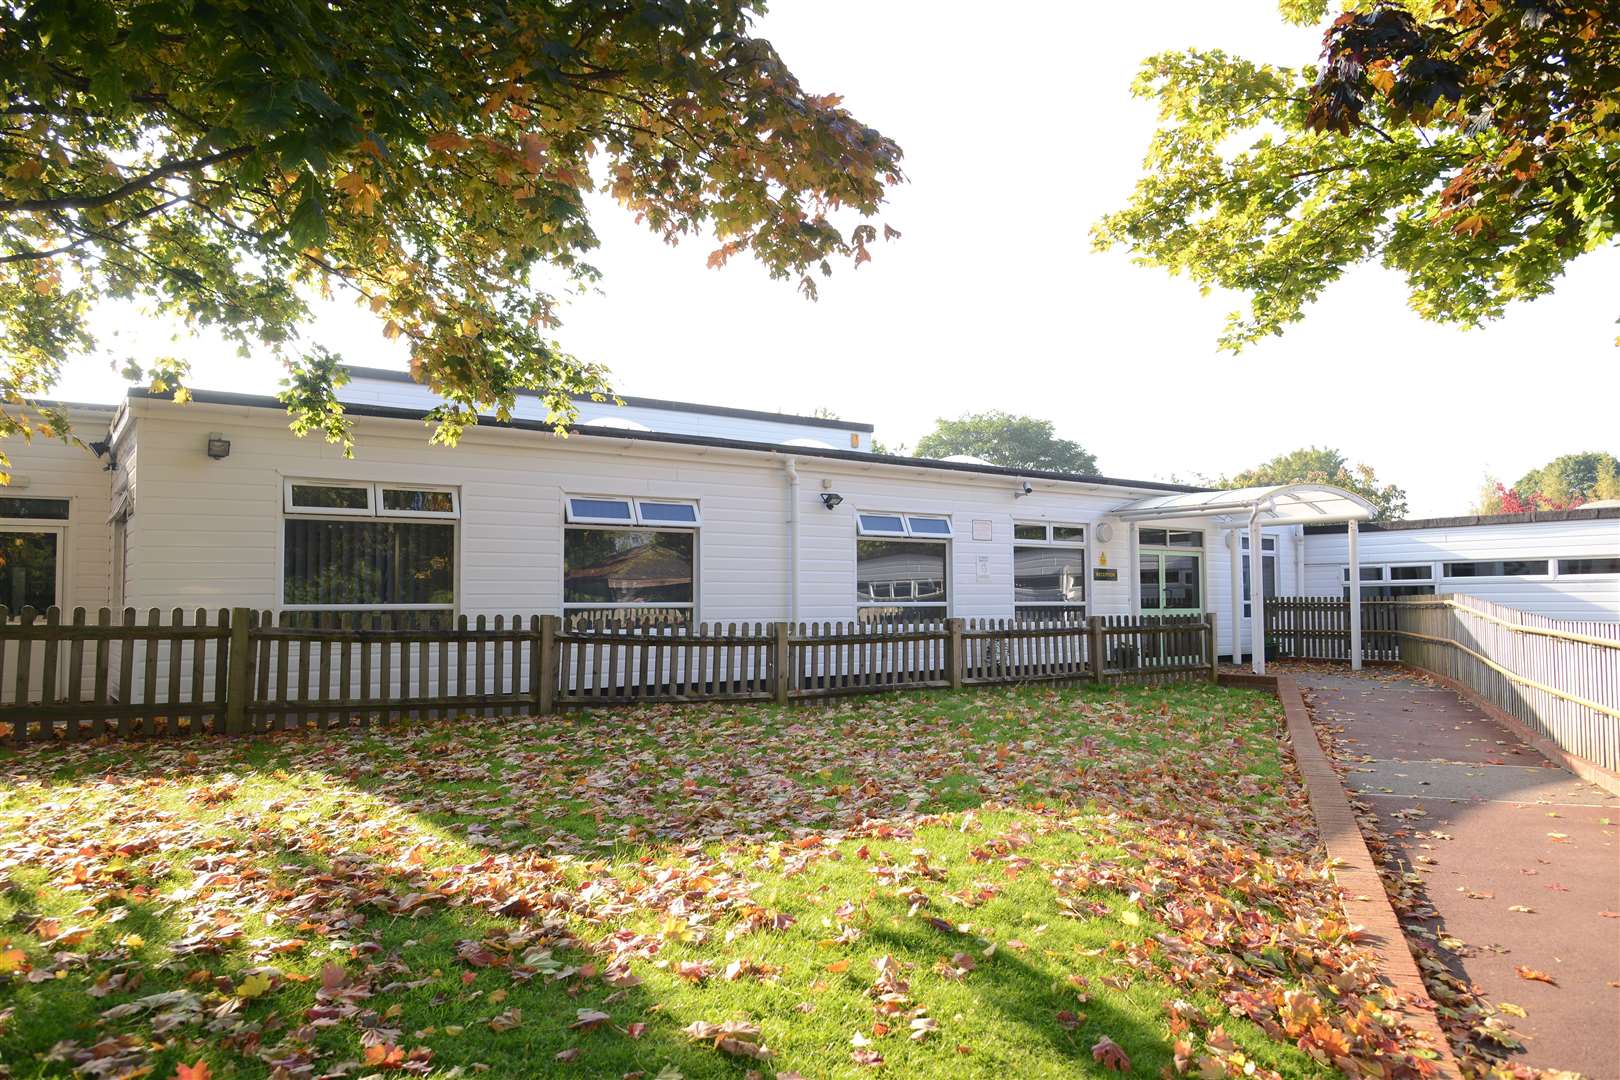 Allington Primary School